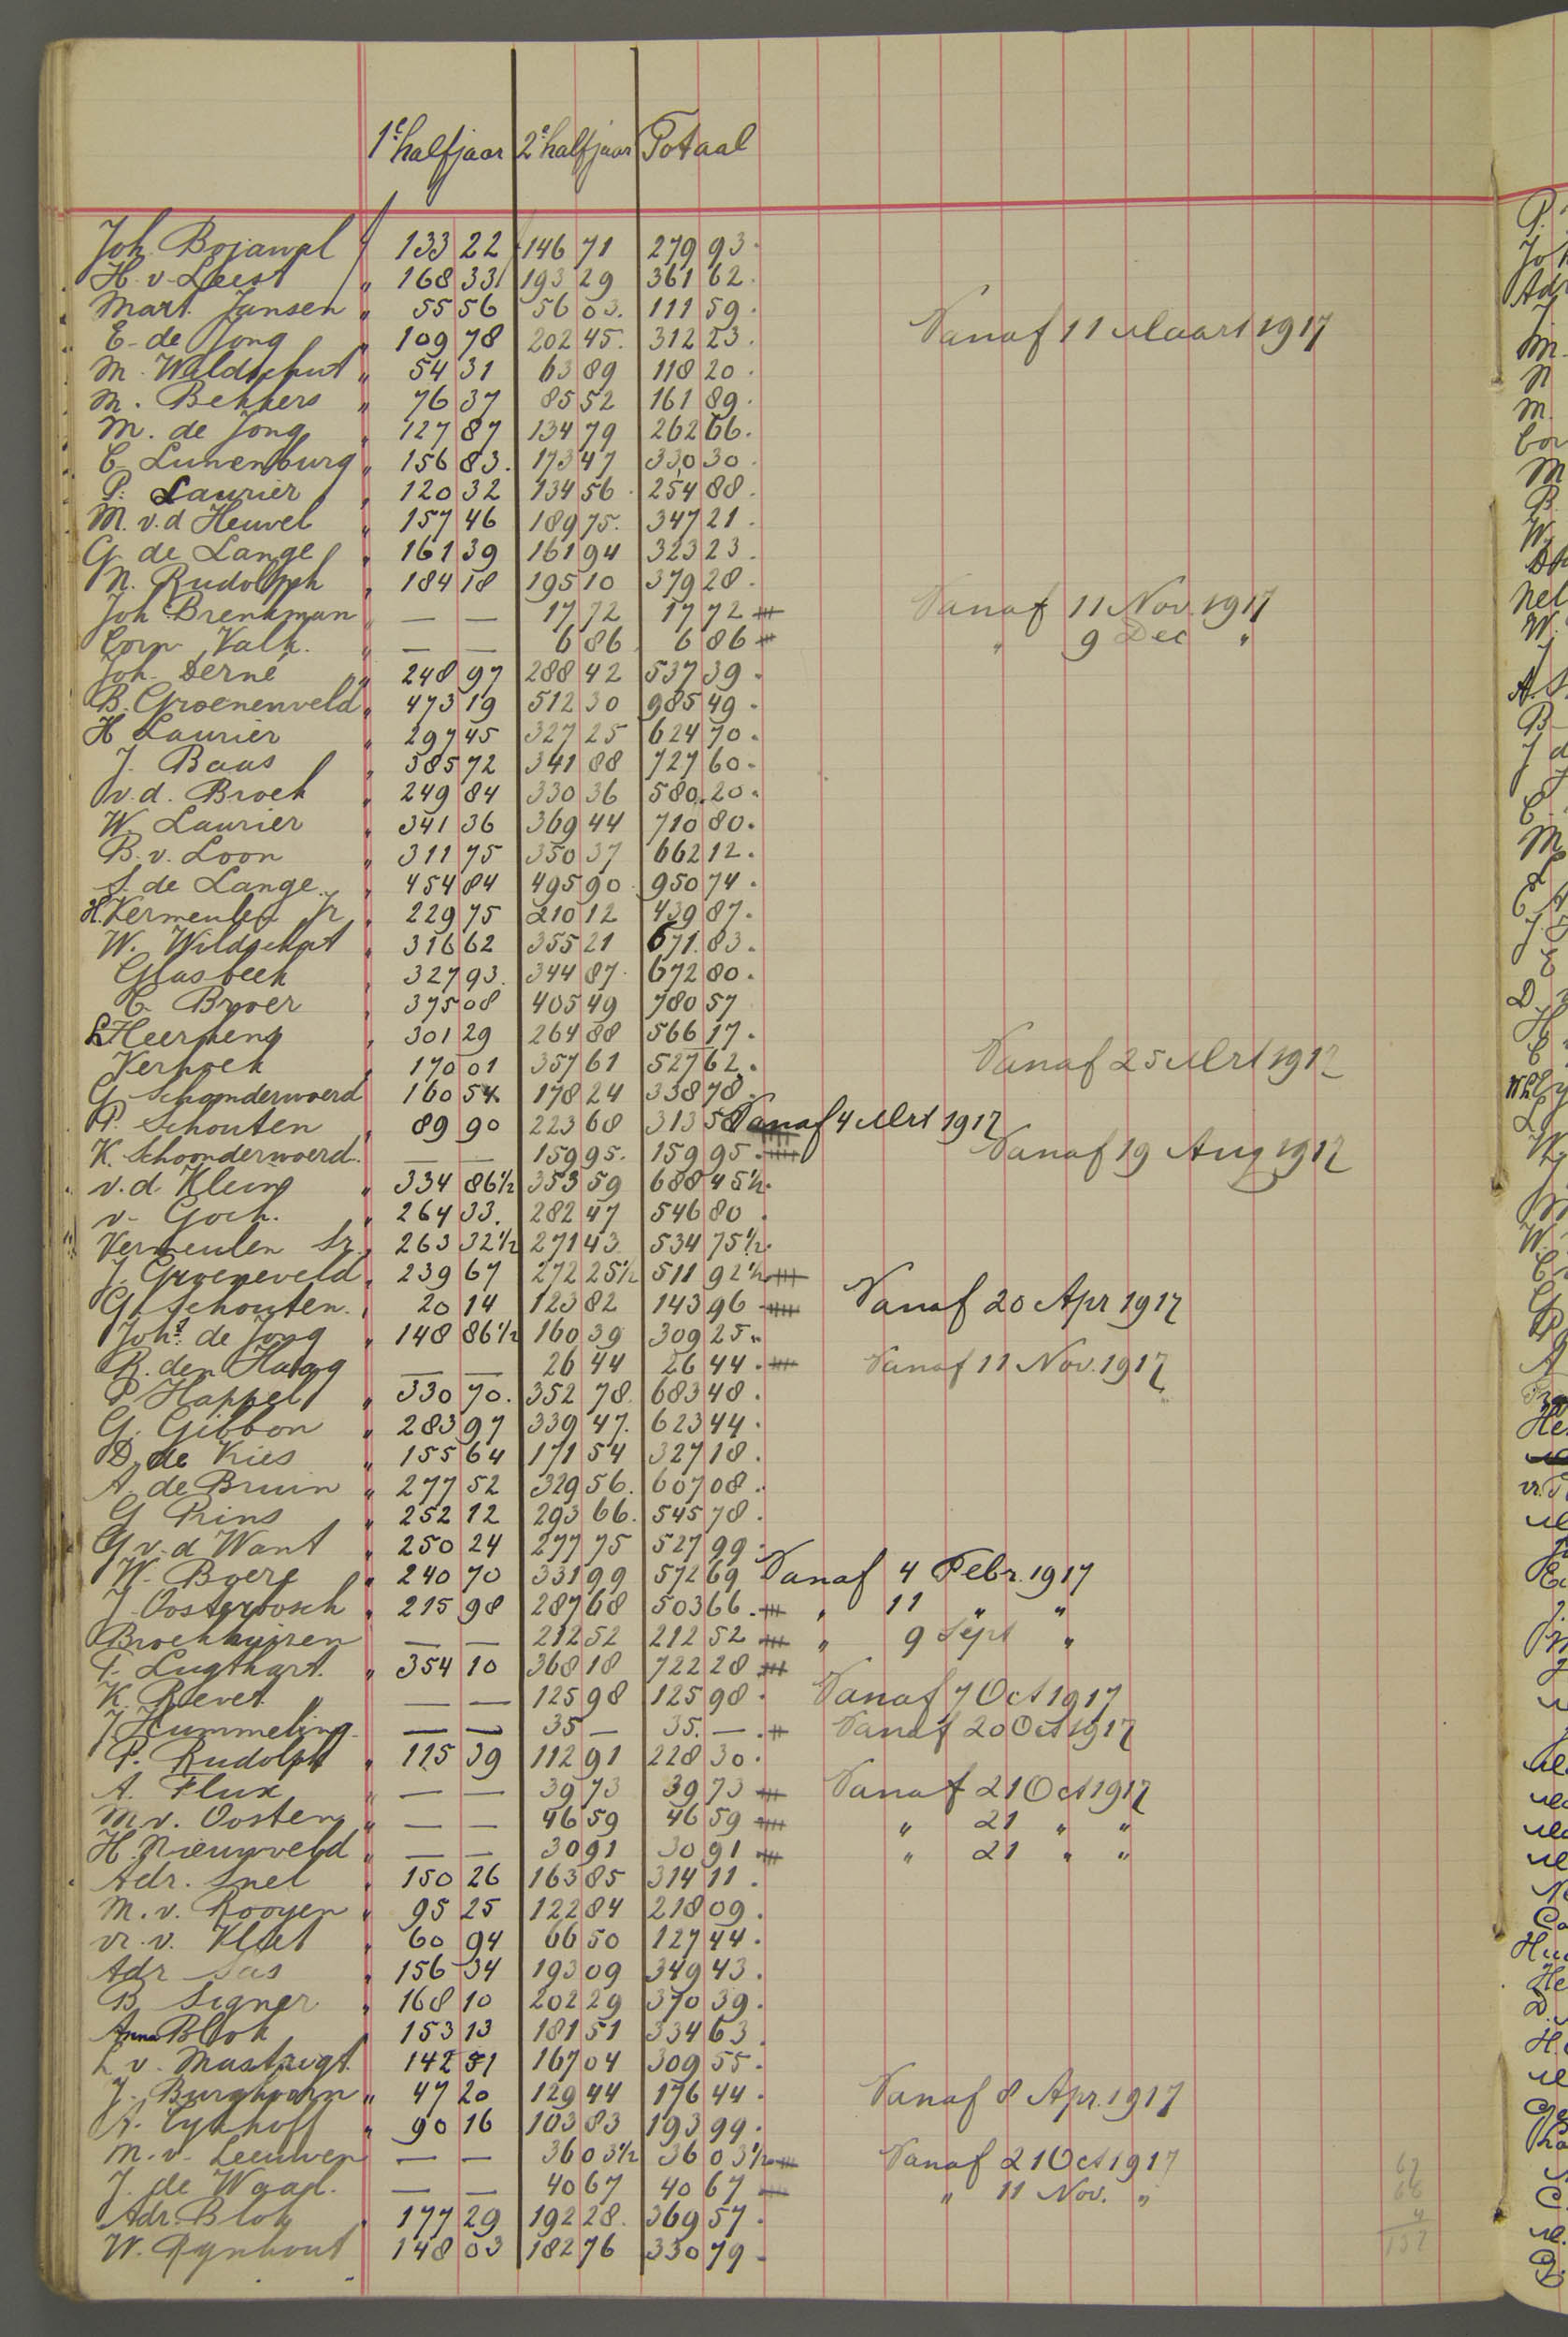 19-10.045-archiefstuk-goedewaagen-loonboek-tremsters-1917-108